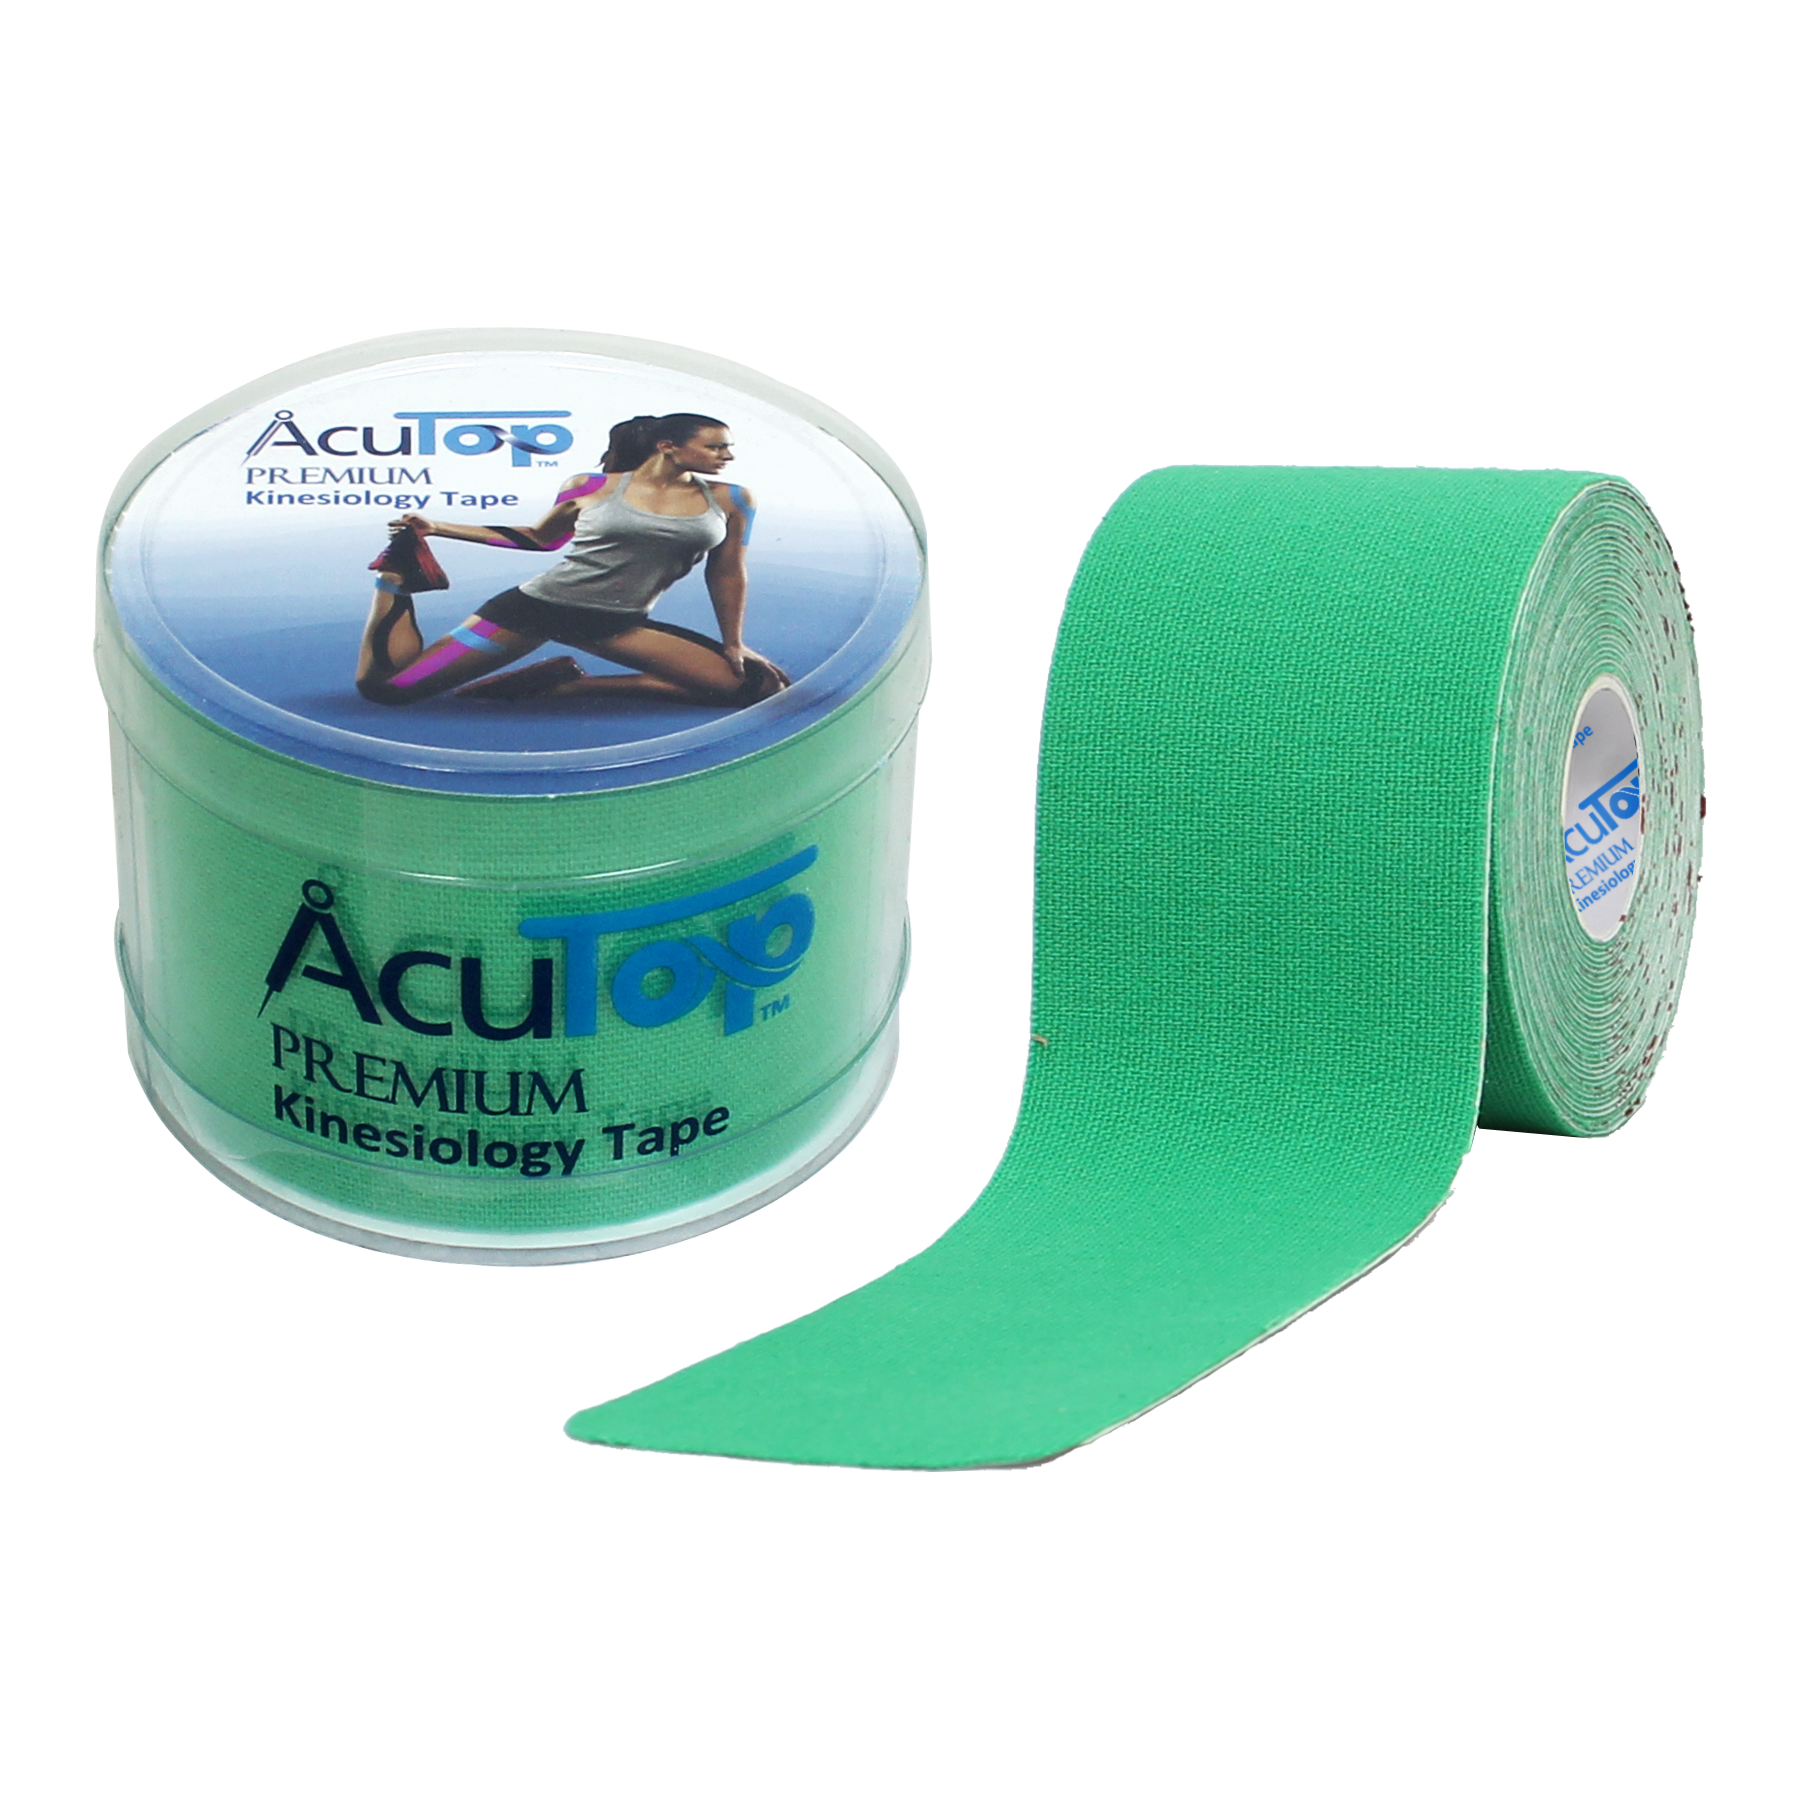 Acutop - Premium Kinesiologie Tape - Groen - 5cm x 5m - Intertaping.nl